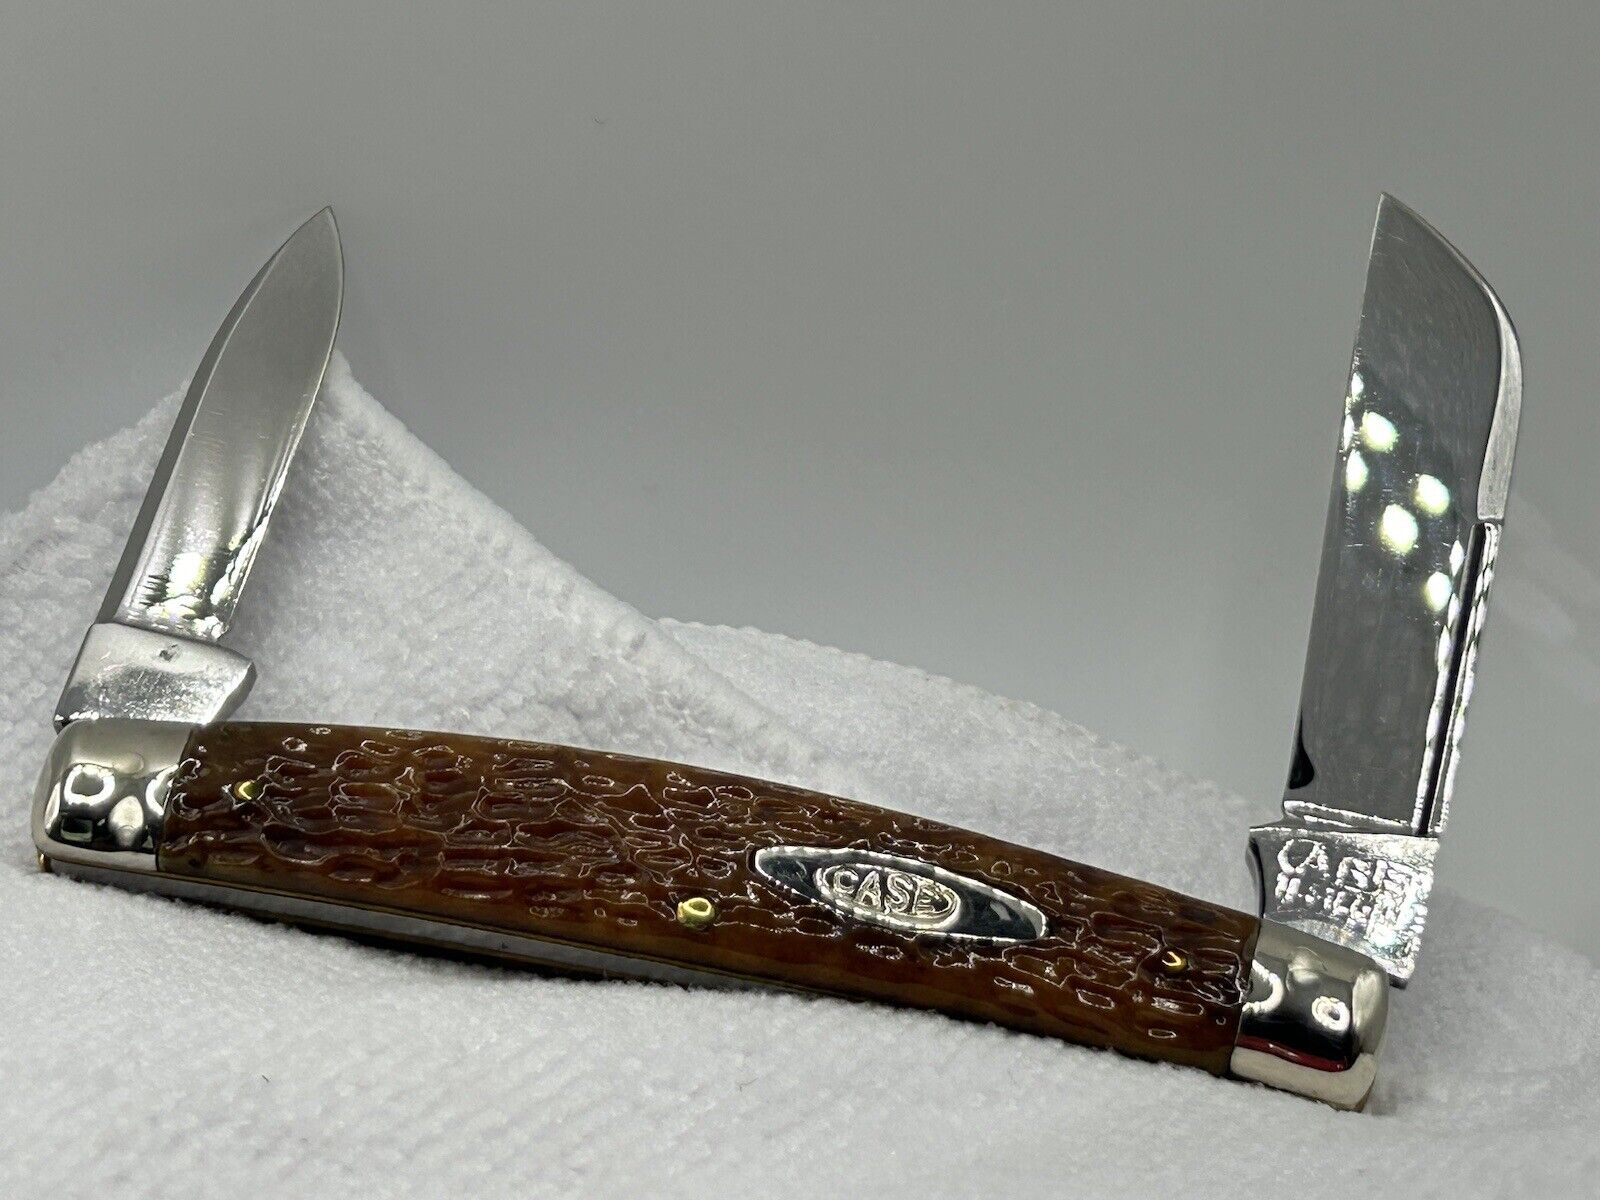 Case 6288 Tested 1920-1940 Vintage Green Bone Pocket Knife, Pinched Bolsters